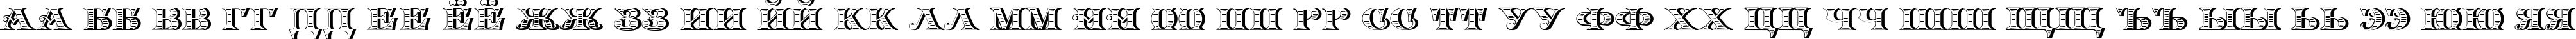 Пример написания русского алфавита шрифтом Arkadia